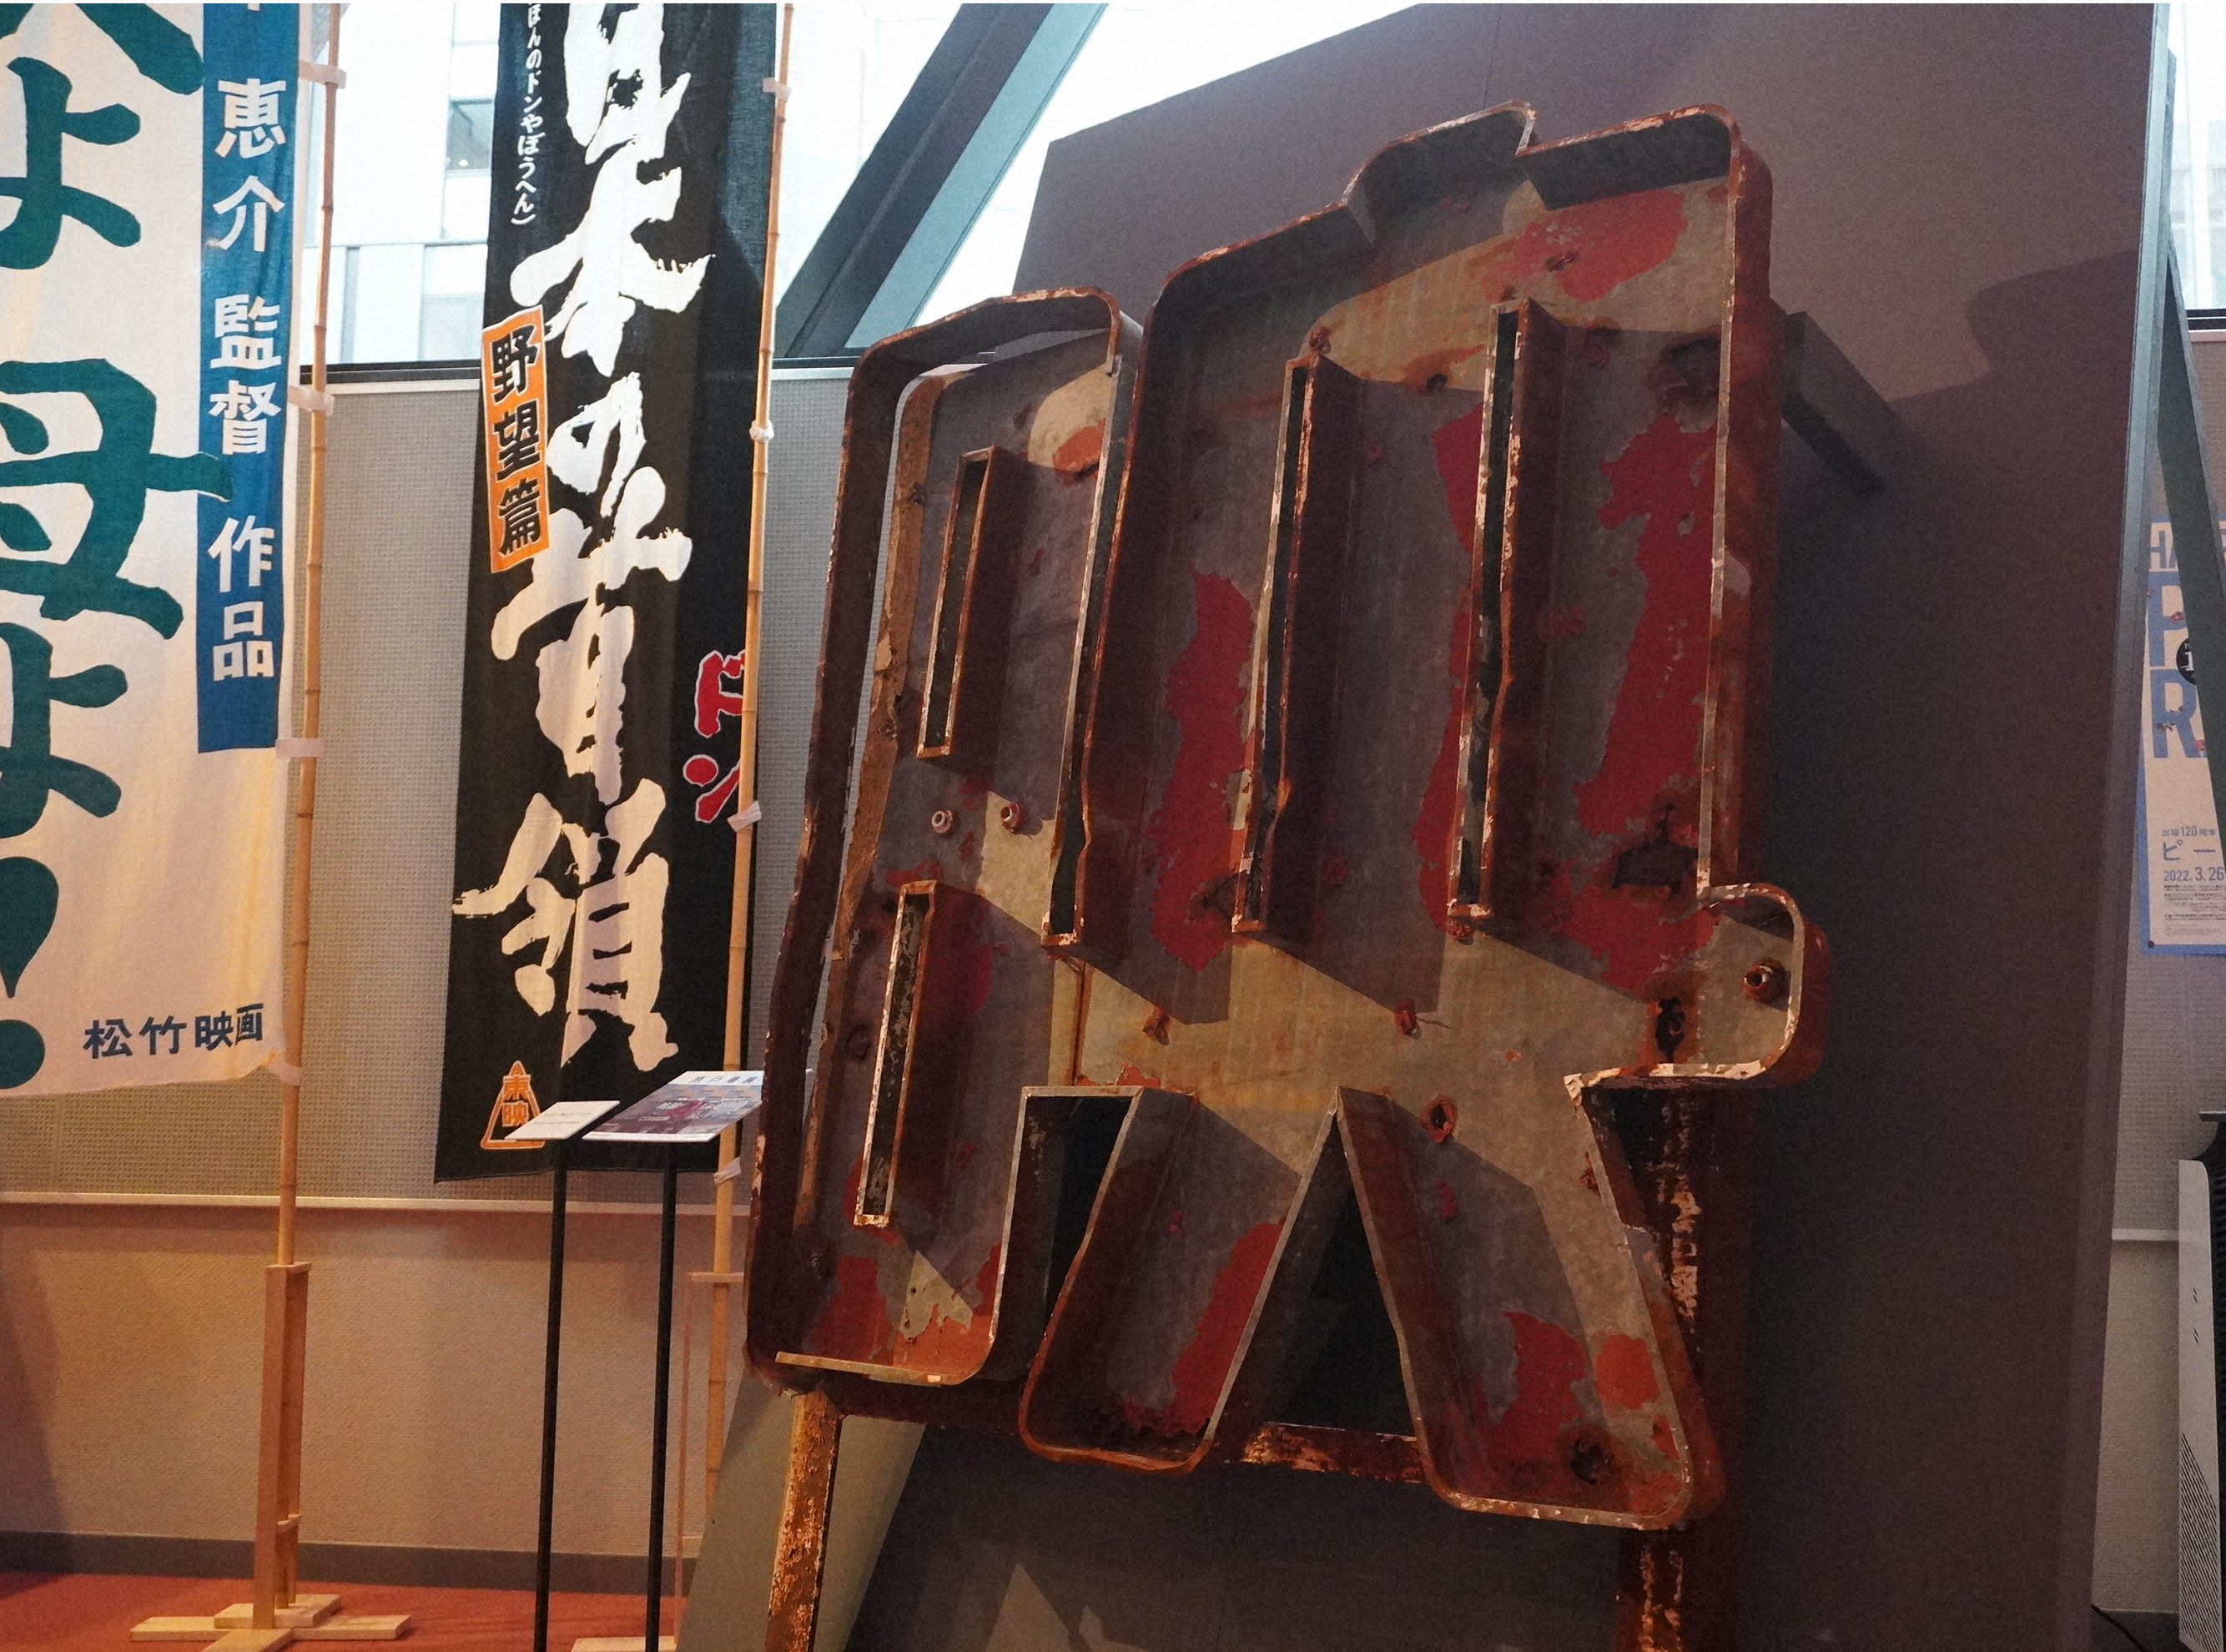 展覧会「日本の映画館」で展示されている塗装も剝げかけた水戸東映の看板。間近で見るのは初めて